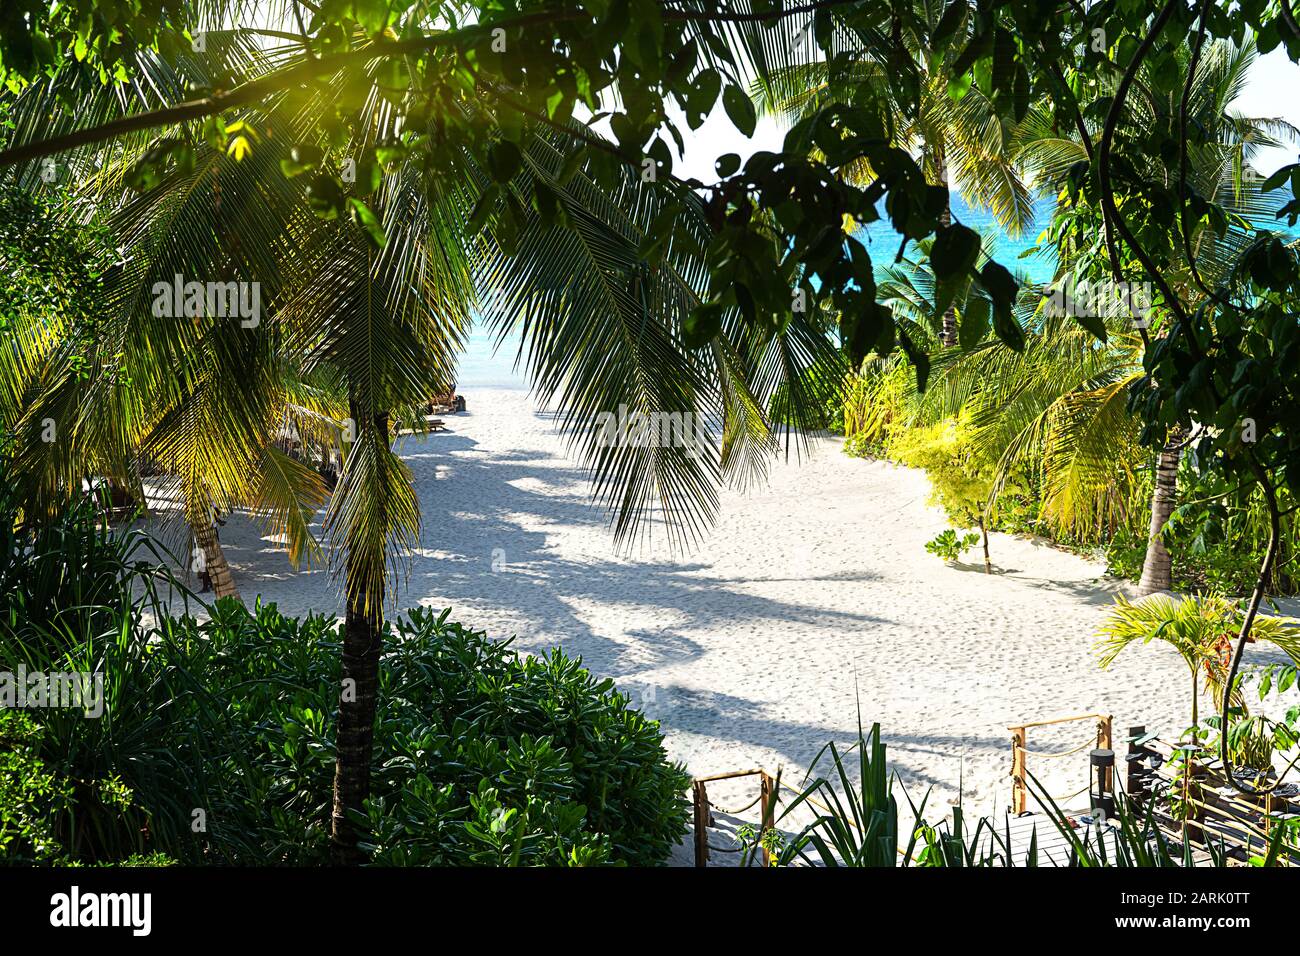 Panoramablick auf einen schönen sonnigen Tag am tropischen Strand von Sandstränden auf den Malediven. Reisekonzept. Stockfoto